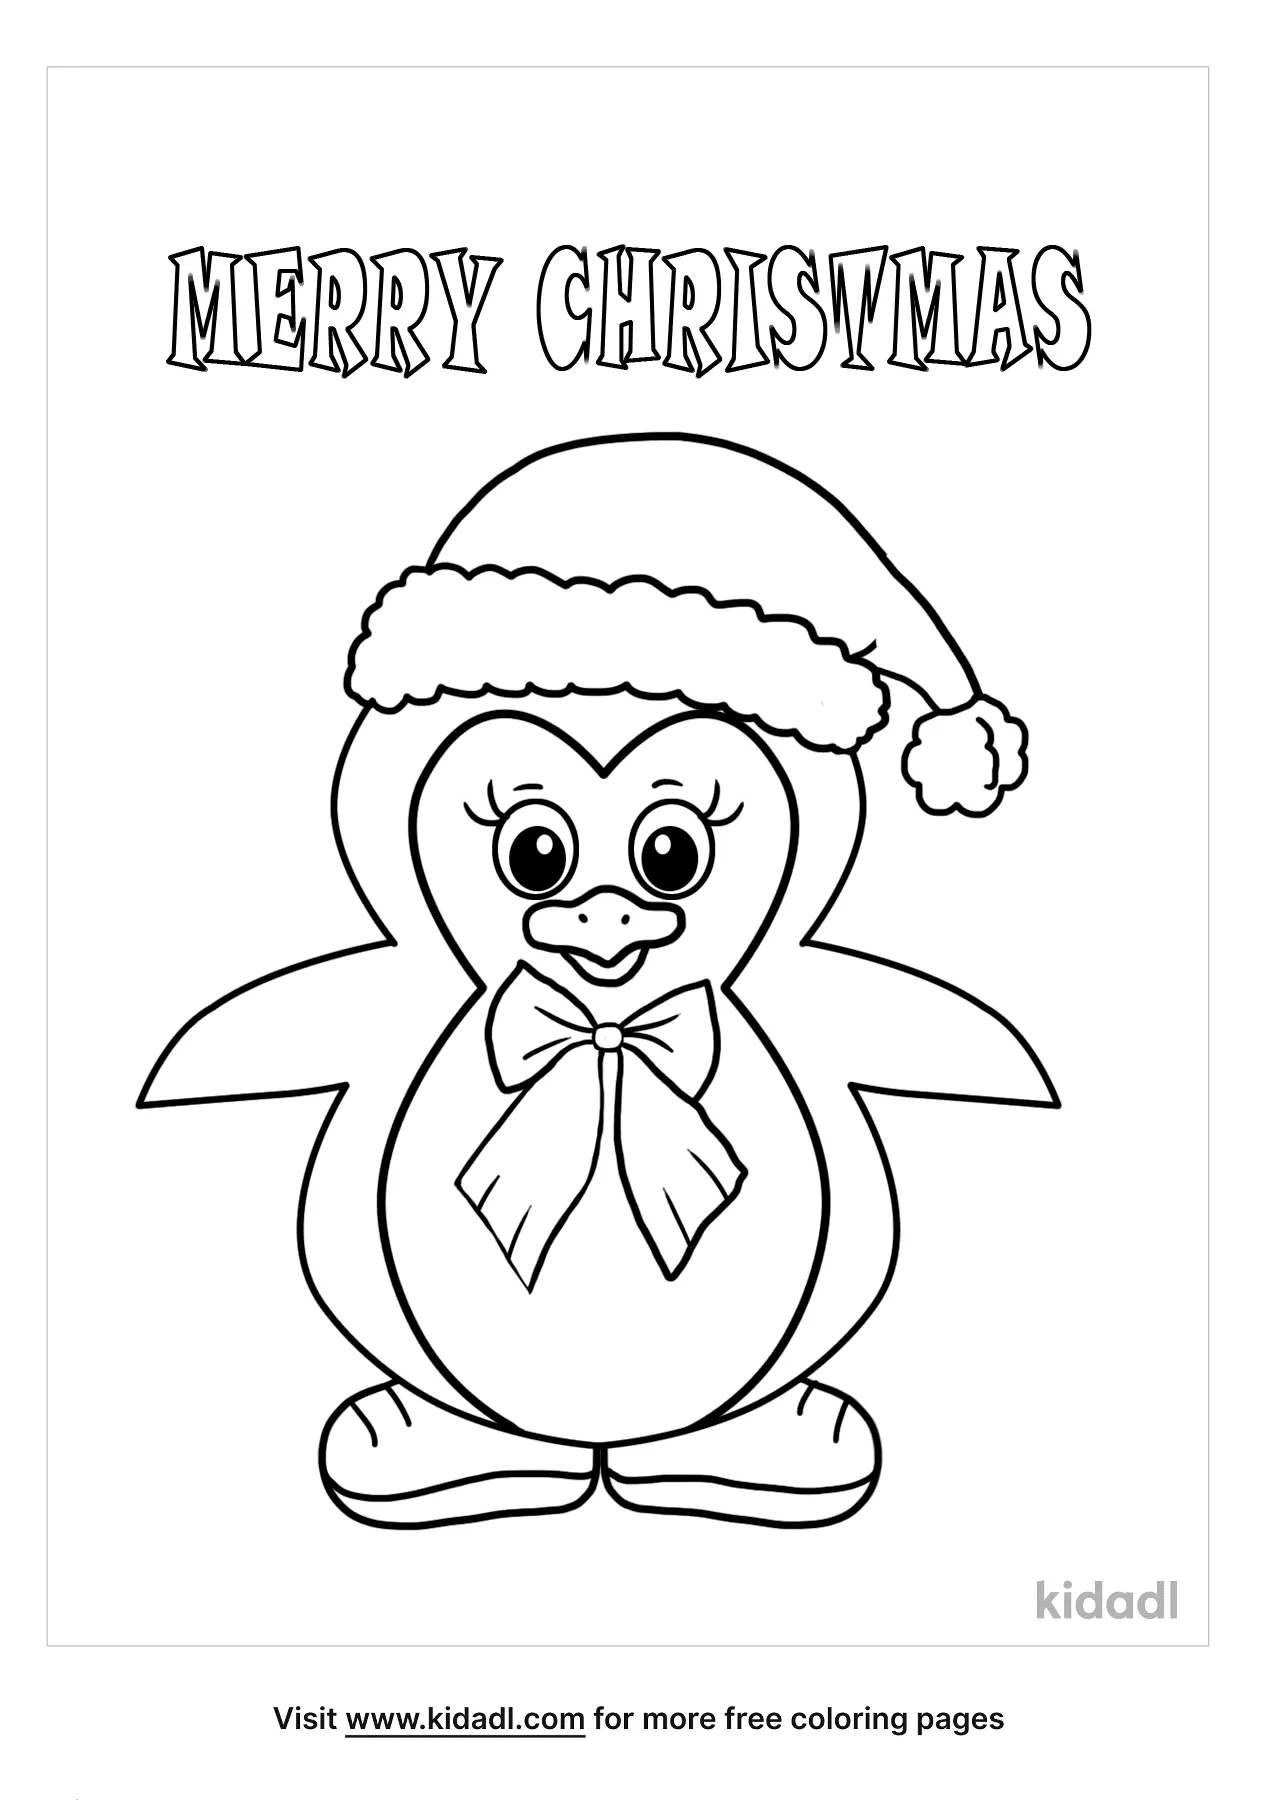 Пингвин рисунок для детей карандашом поэтапно легко